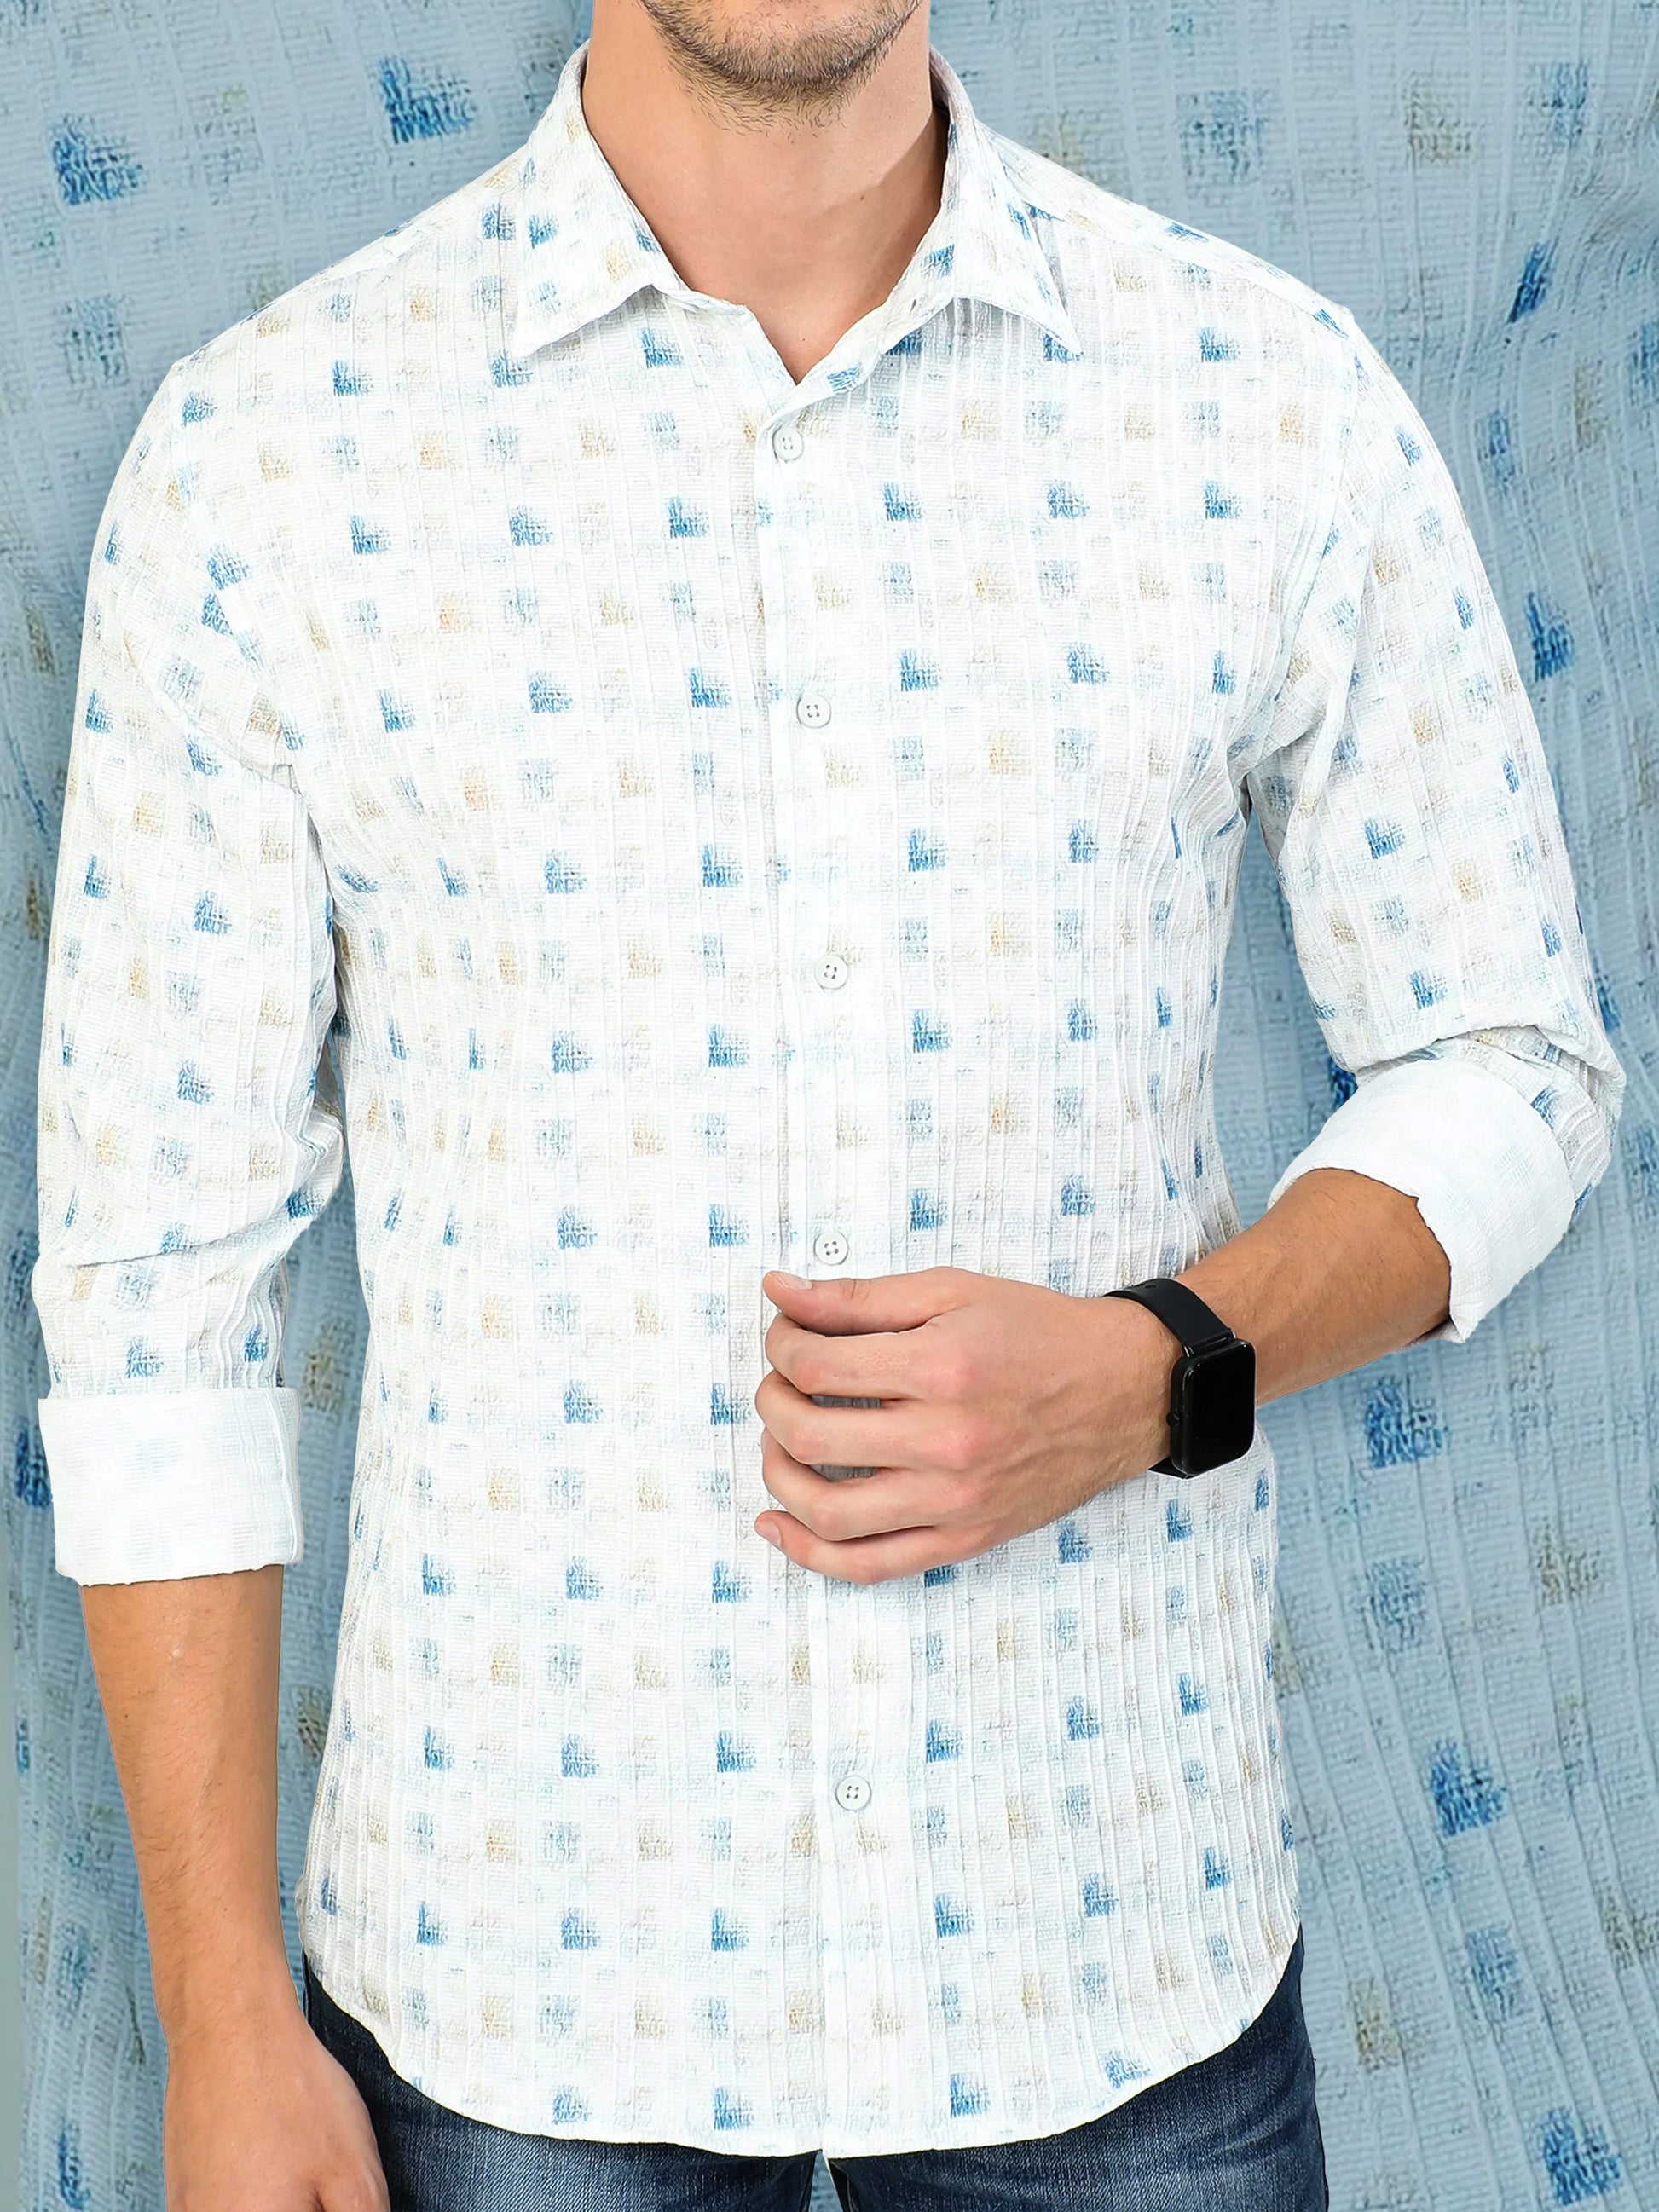 white brush stroke men's abstract printed shirt